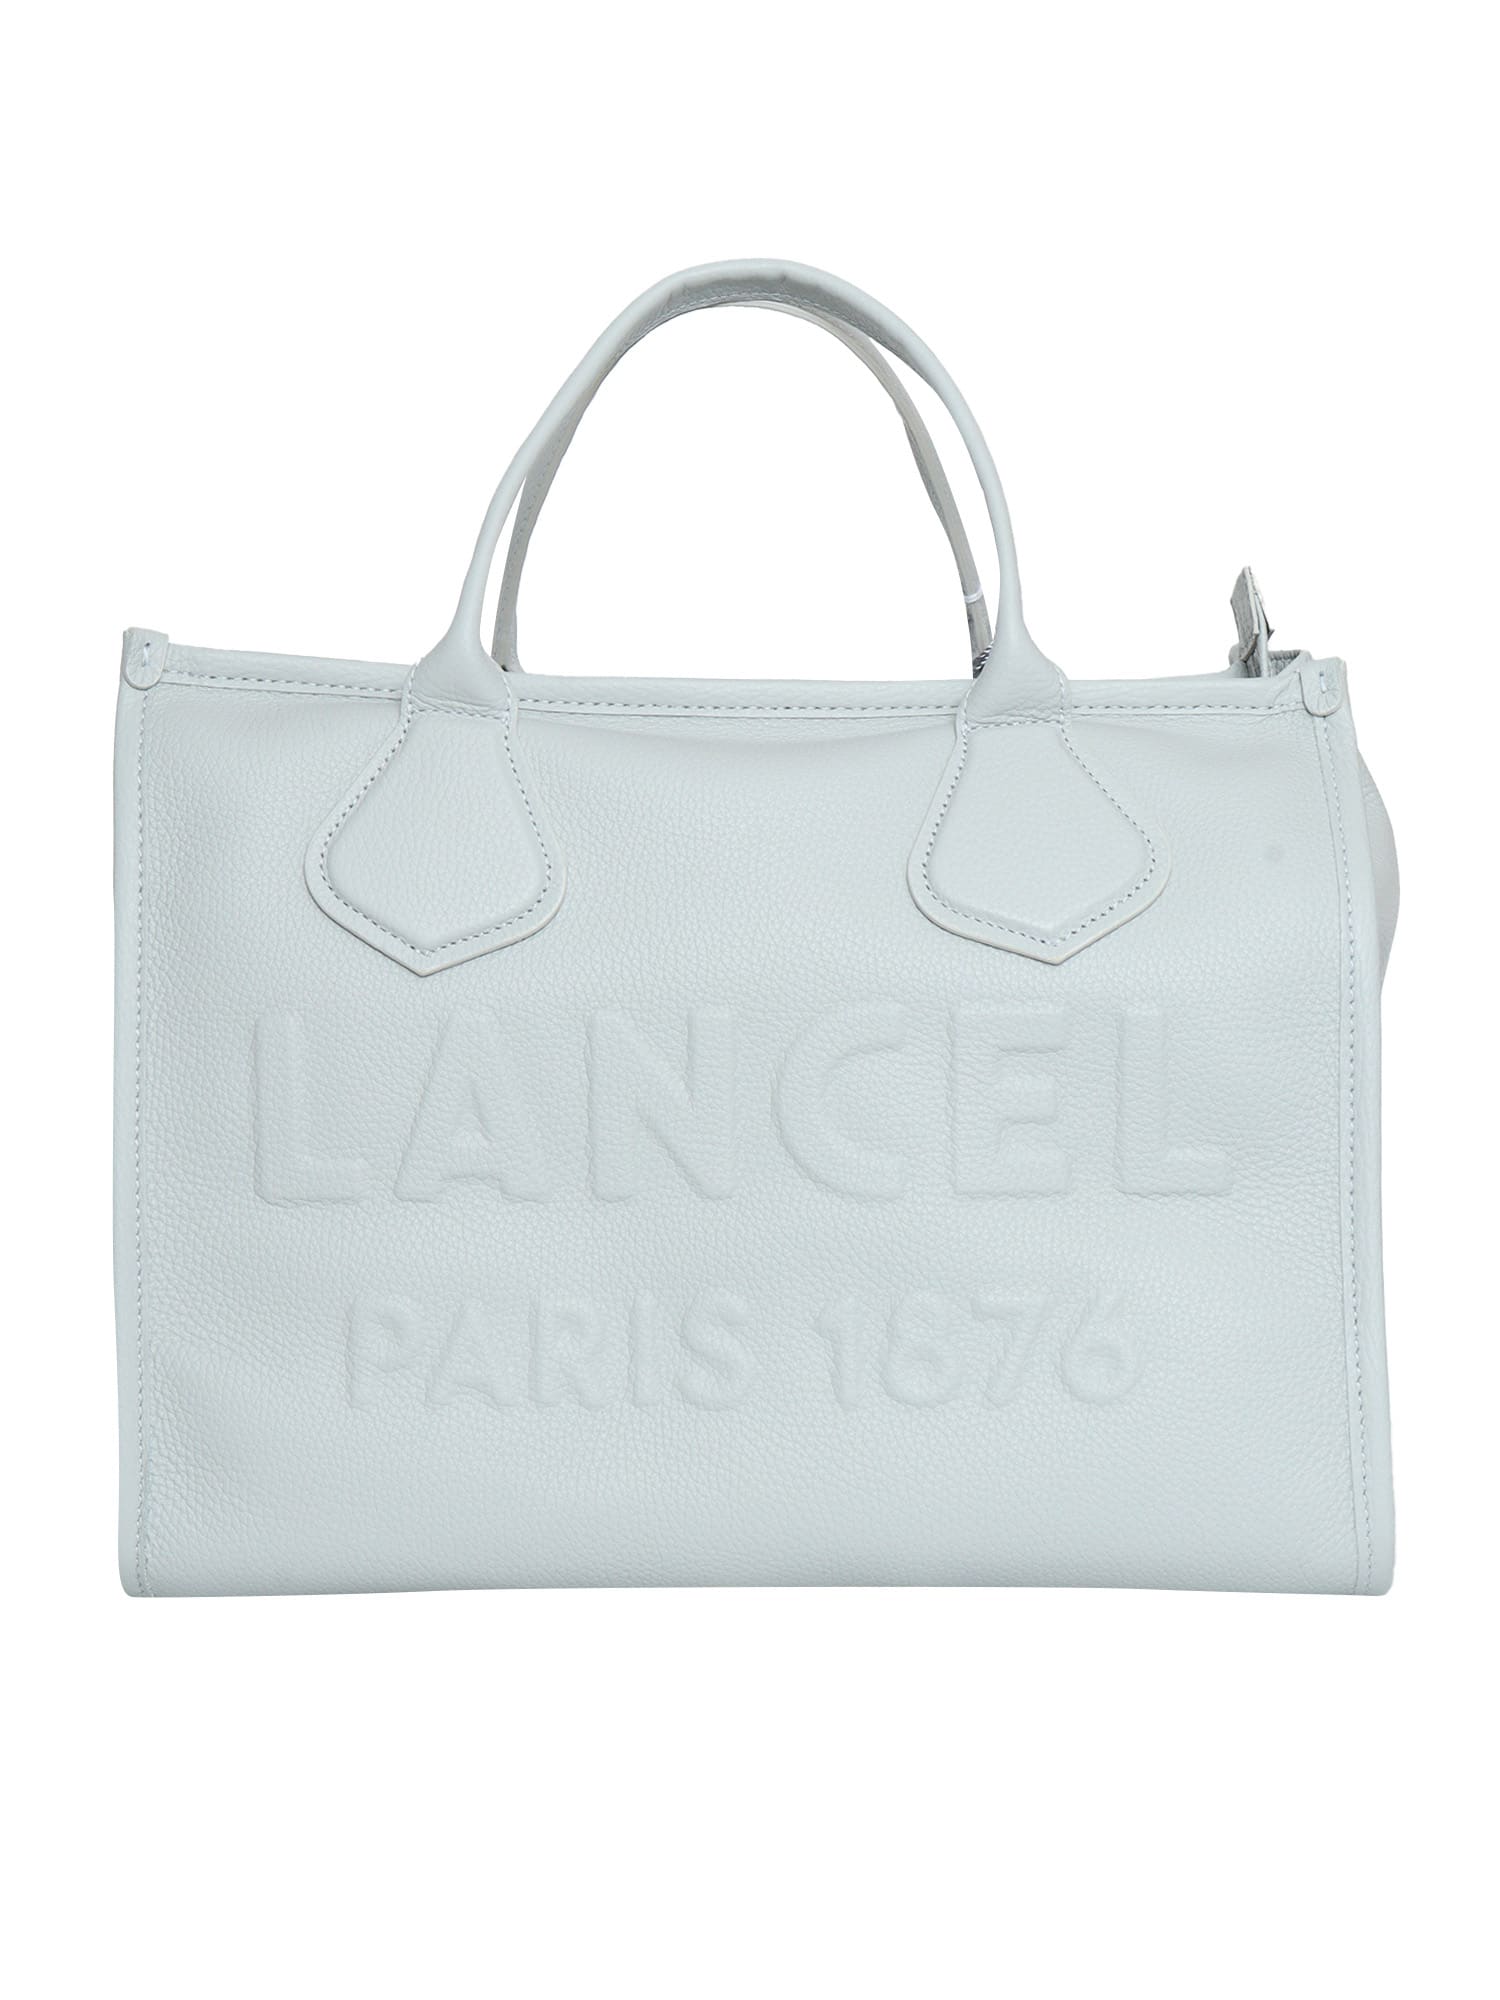 Lancel White Cabas Bag